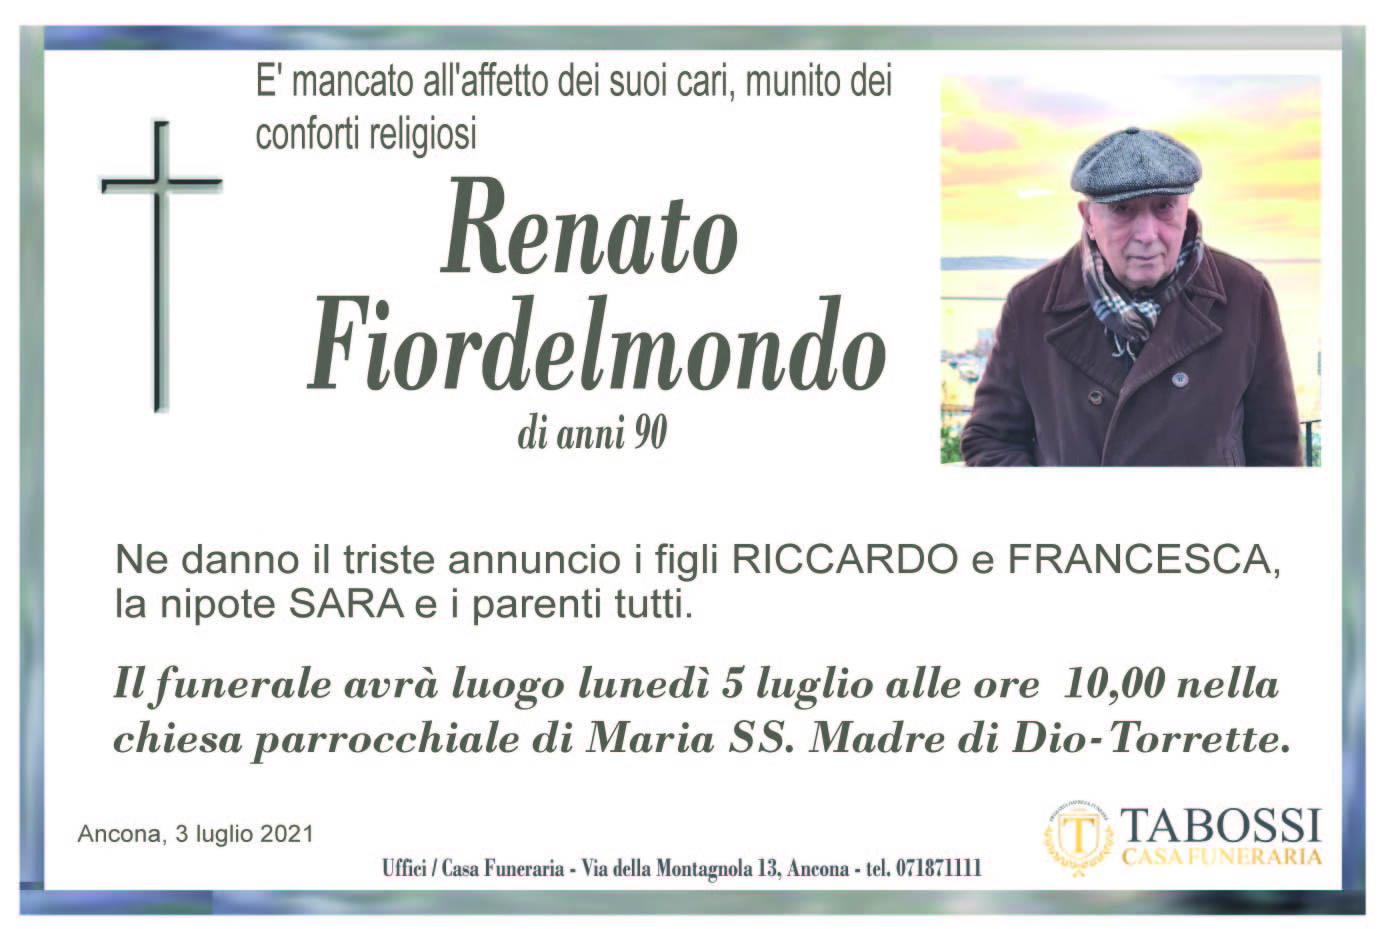 Renato Fiordelmondo